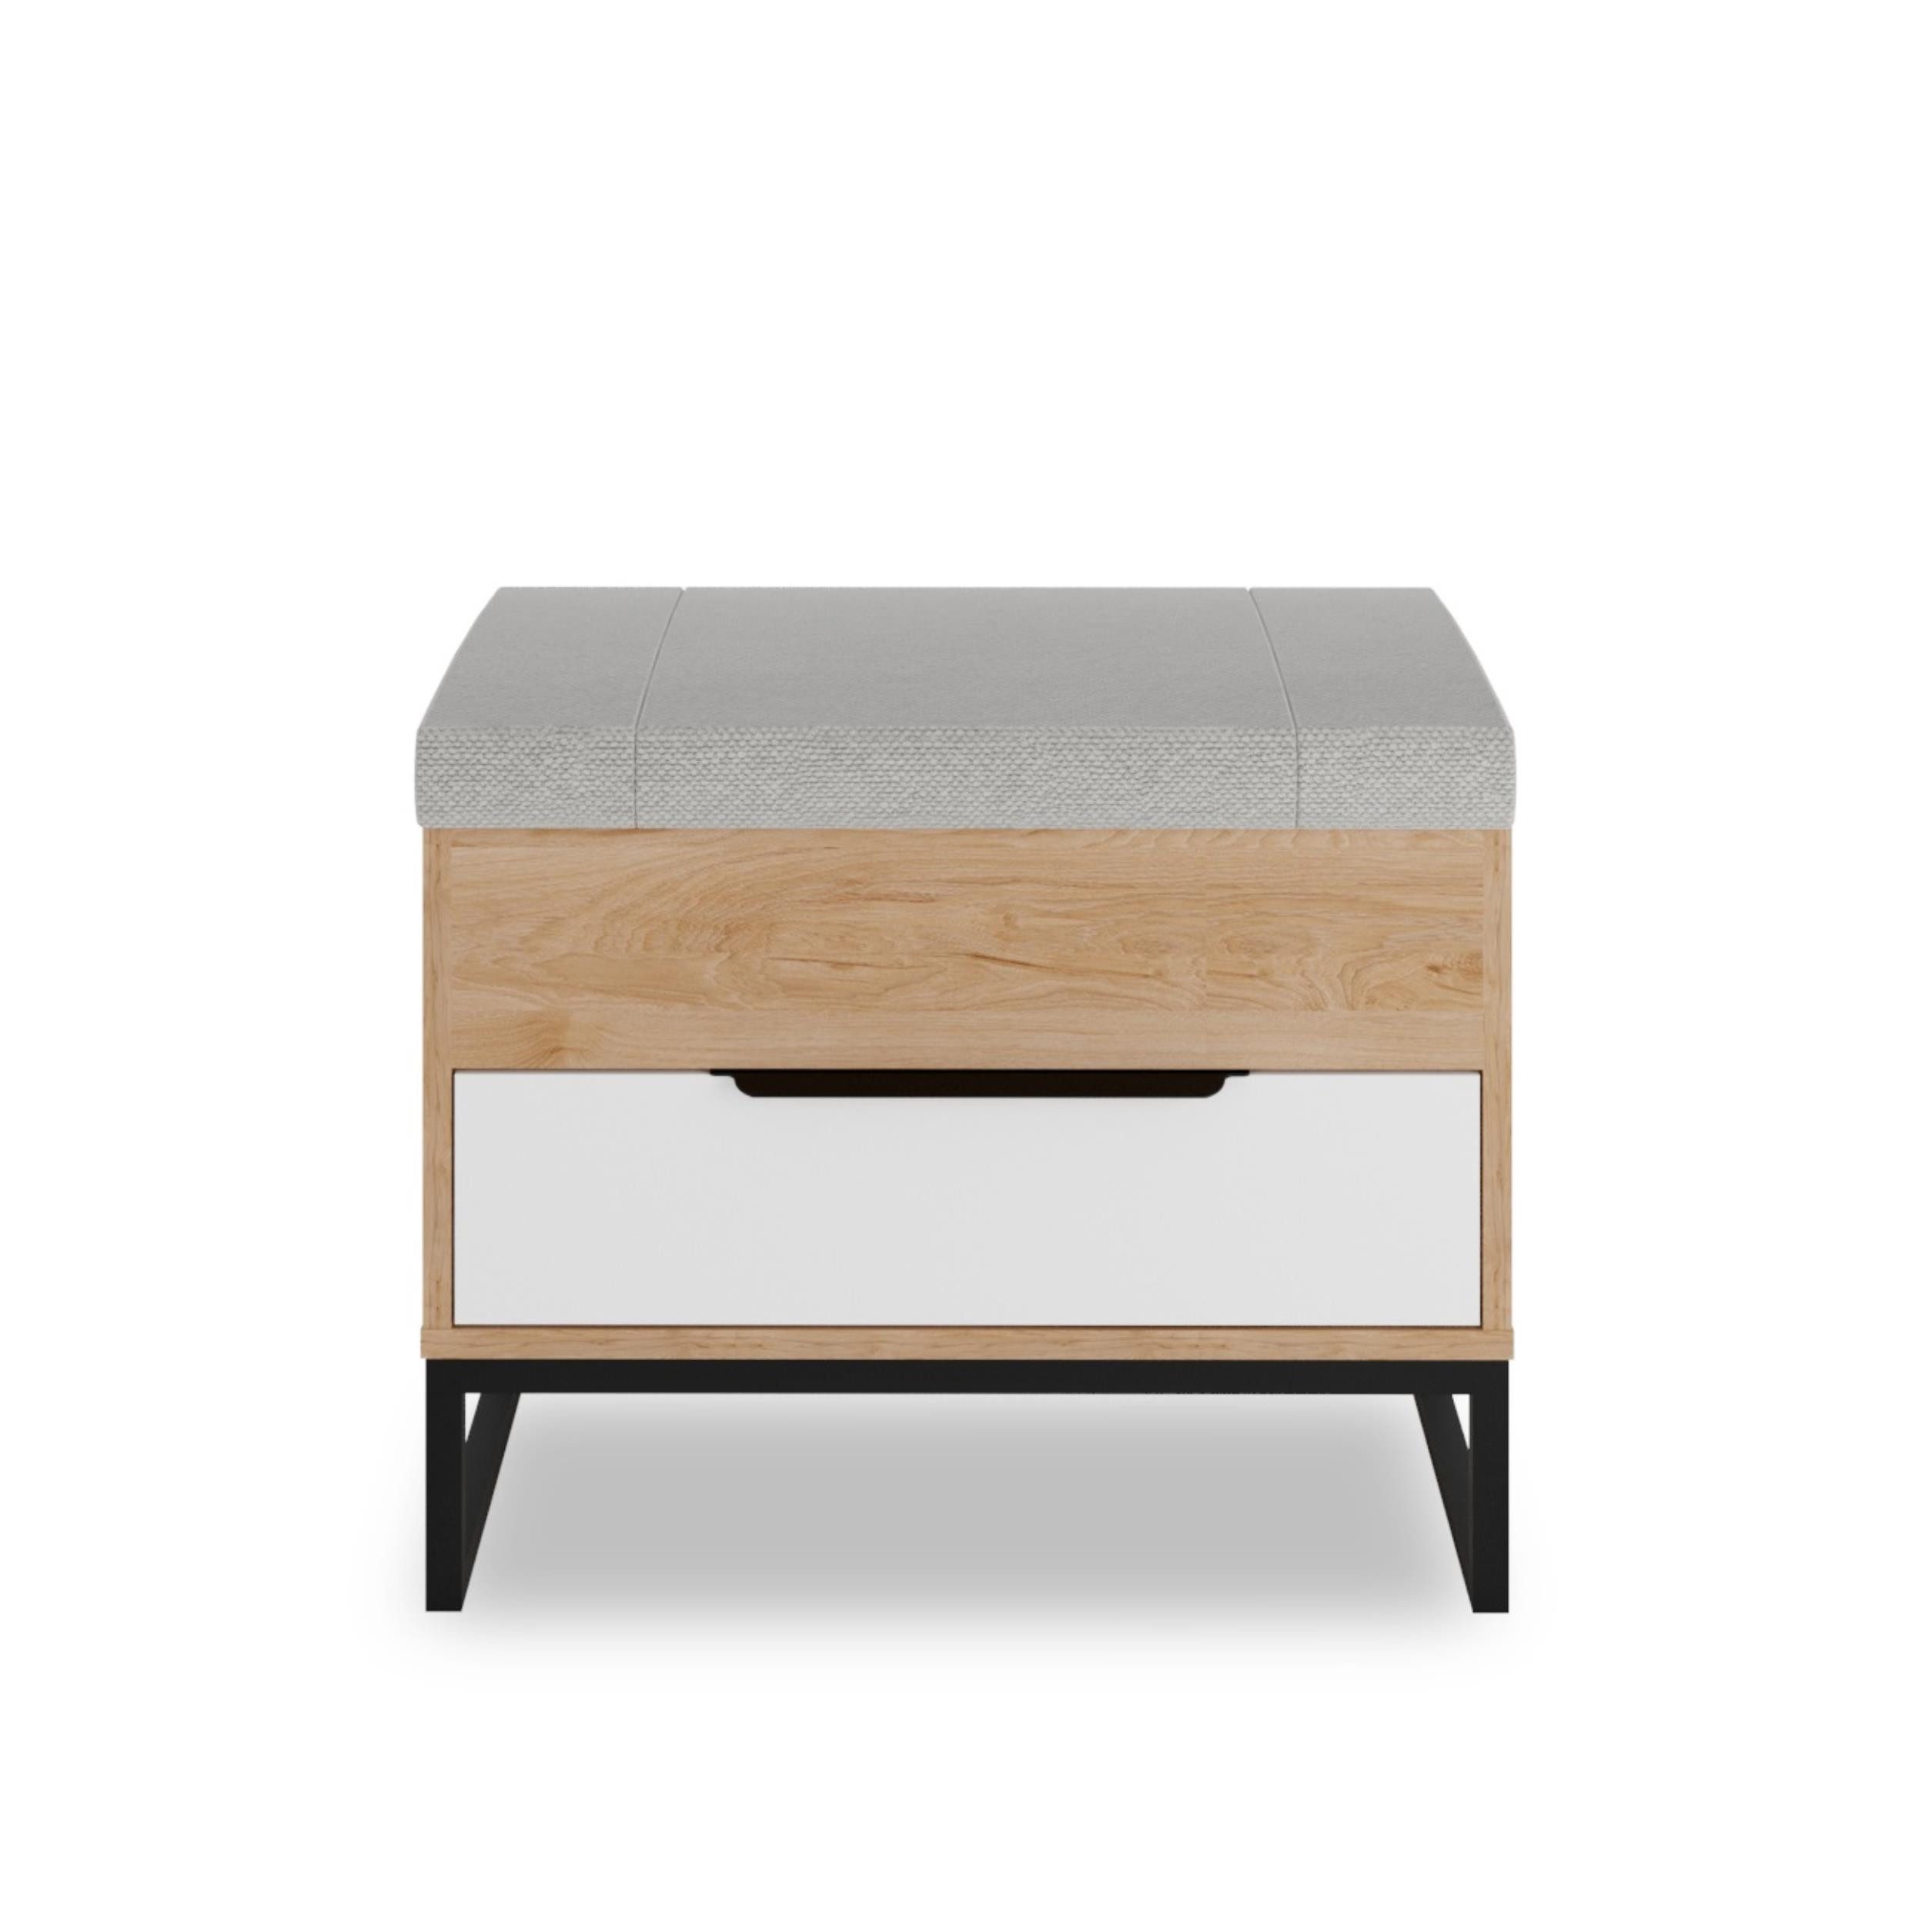 Furnix Sitzbank LENDRI mit gepolstertem Sitz und Schublade Hickory/Weiß, Maße Hocker 59x49x41 cm, Design & Funktion